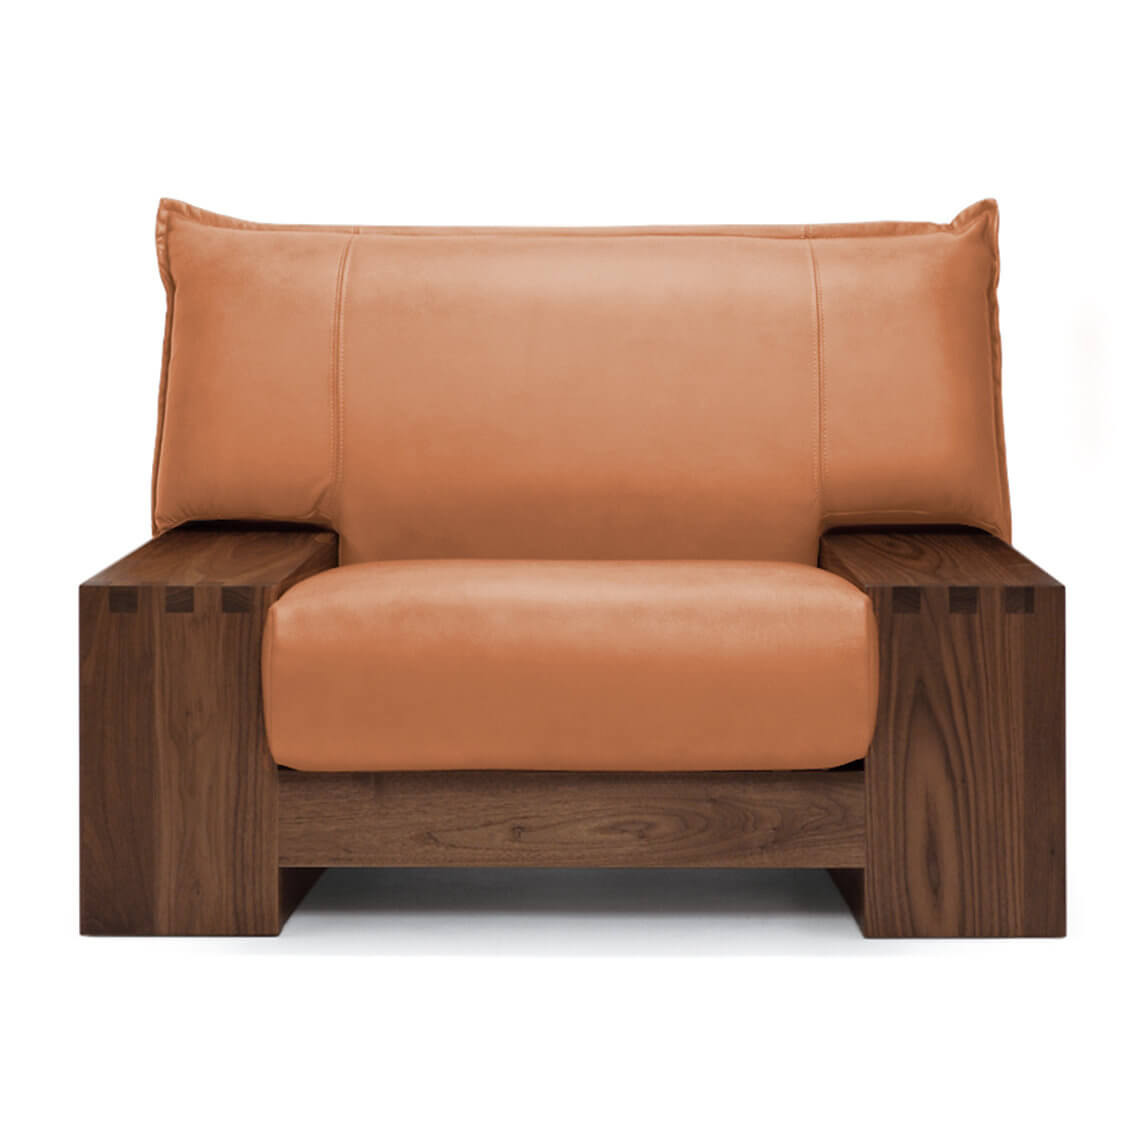 KASHIWA KIZA 柏木工 日本沙發 皮沙發 沙發座椅 木製沙發